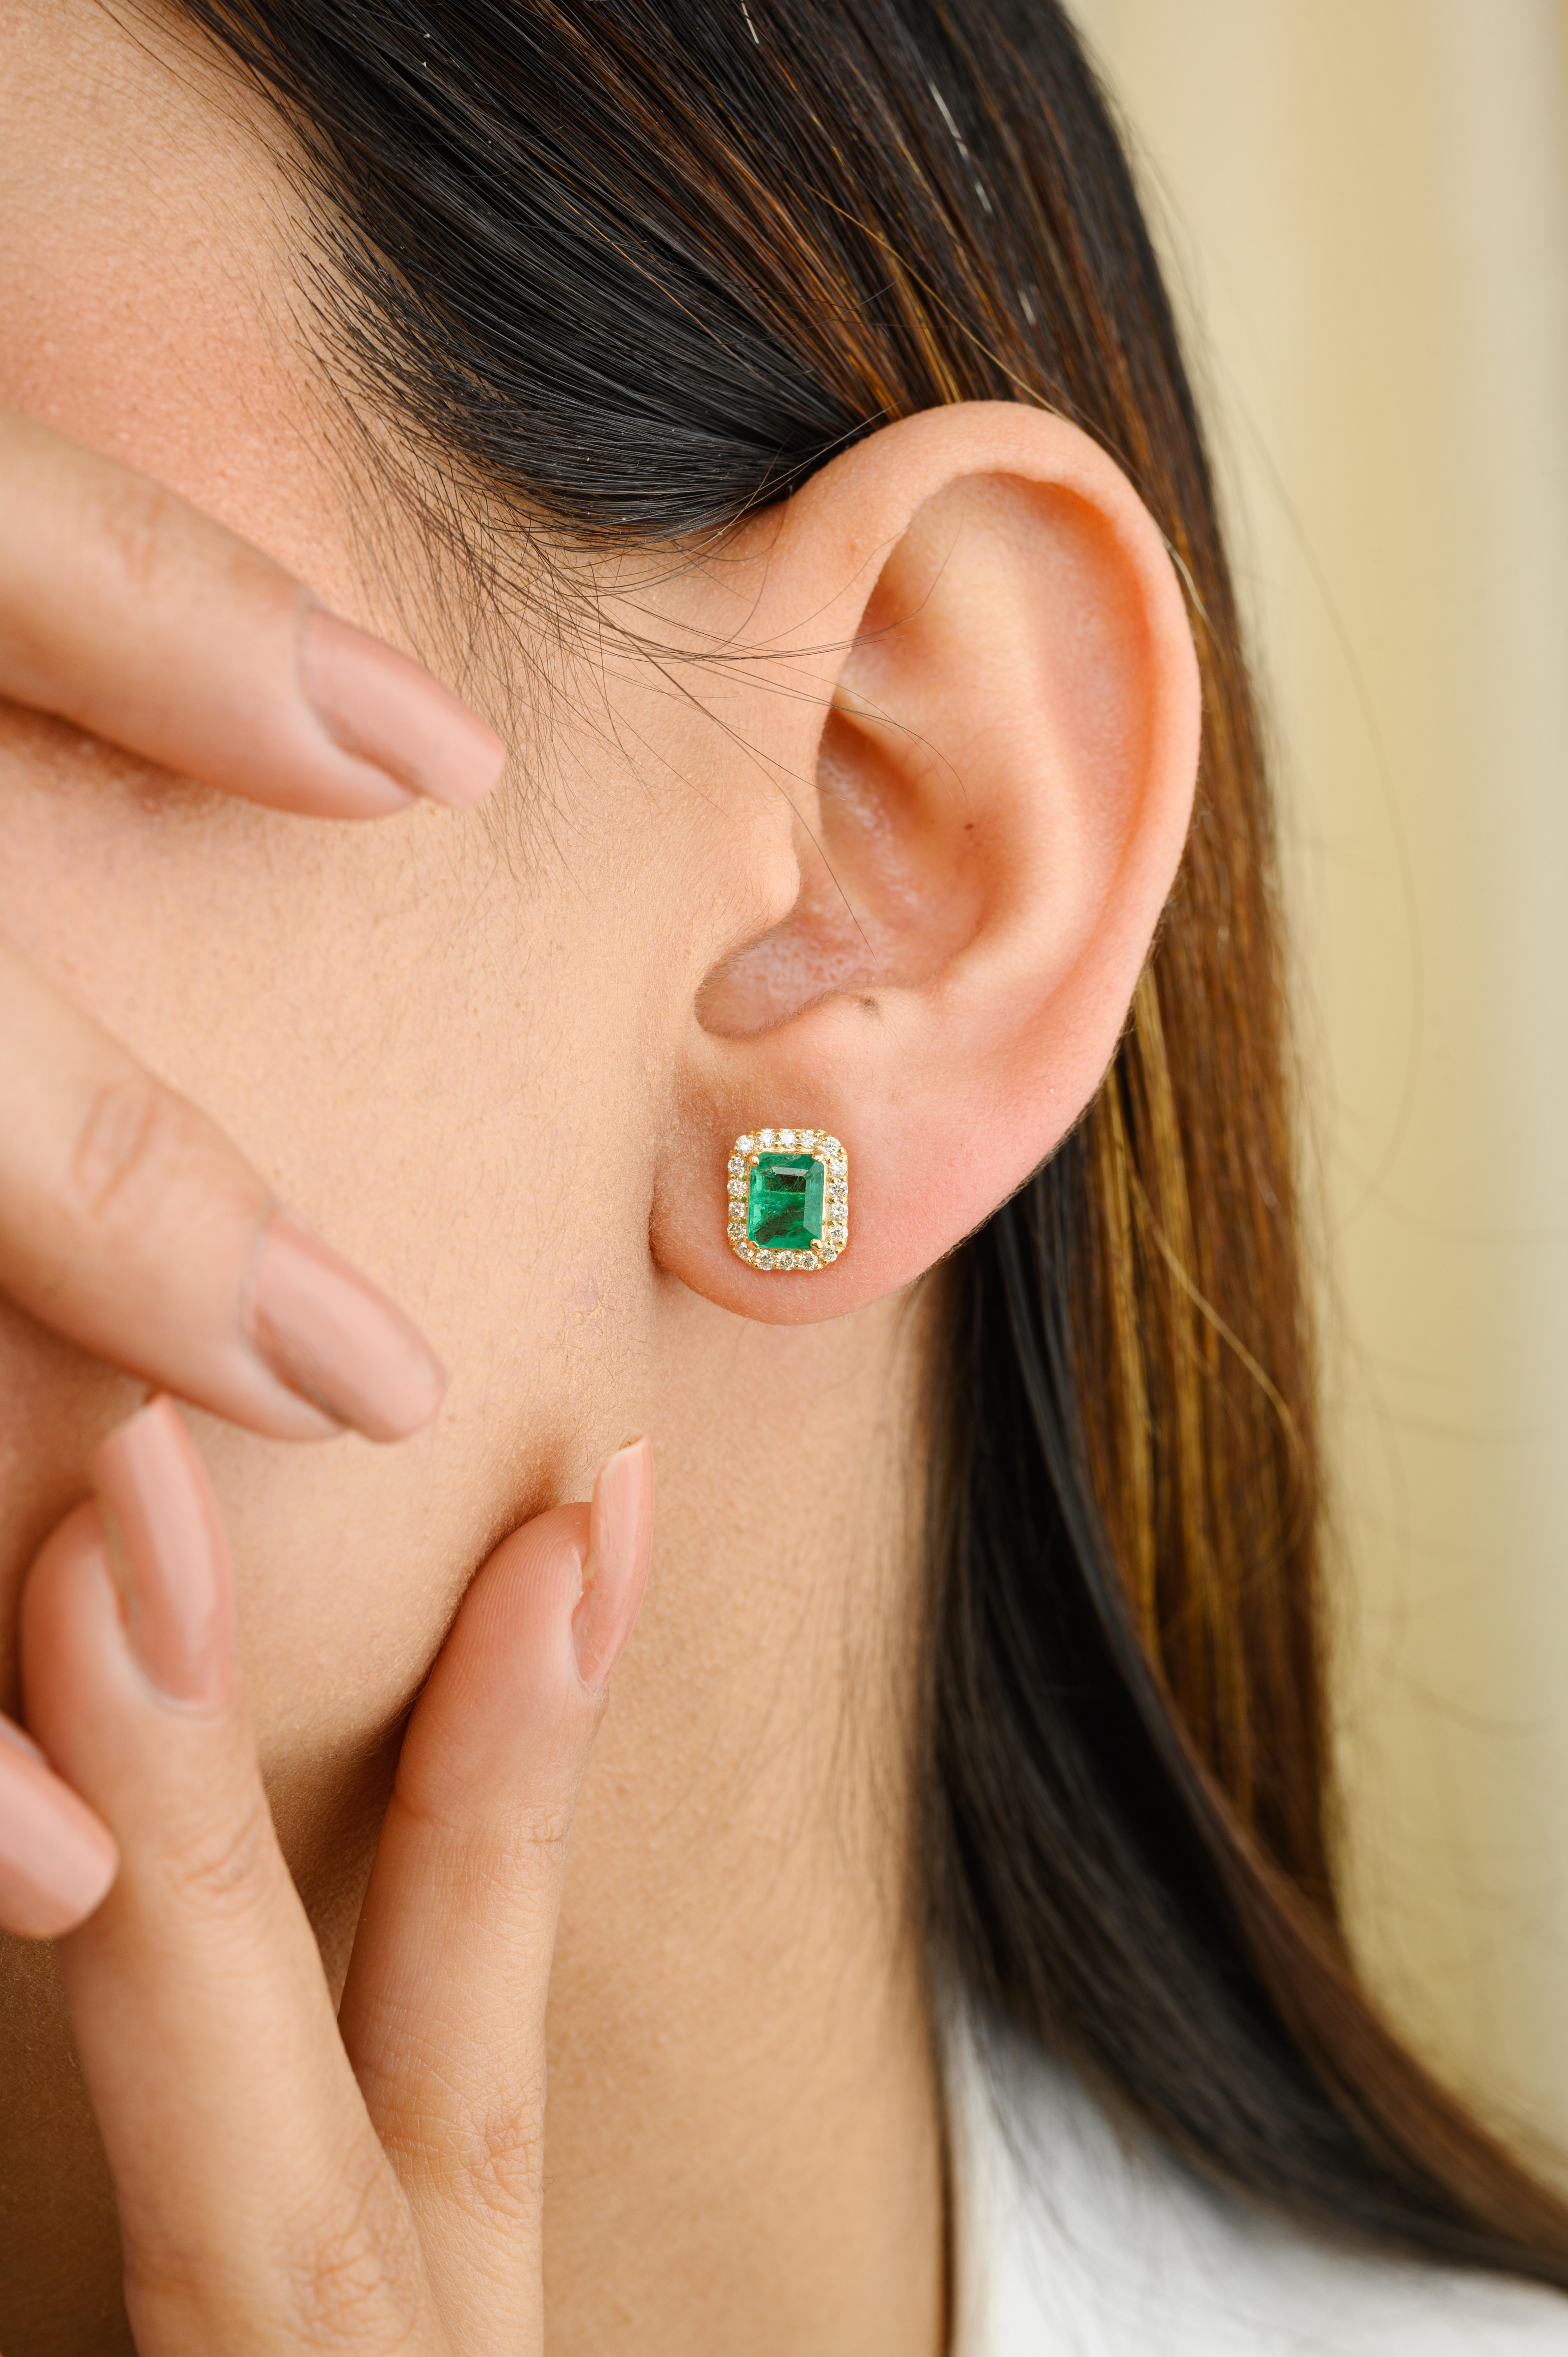 Grüne Smaragd-Diamant-Halo-Ohrstecker aus 18-karätigem Gold, um Ihren Look zu unterstreichen. Sie brauchen Ohrstecker, um mit Ihrem Look ein Statement zu setzen. Diese Ohrringe mit Smaragd im Achteckschliff und Diamanten im Rundschliff sorgen für